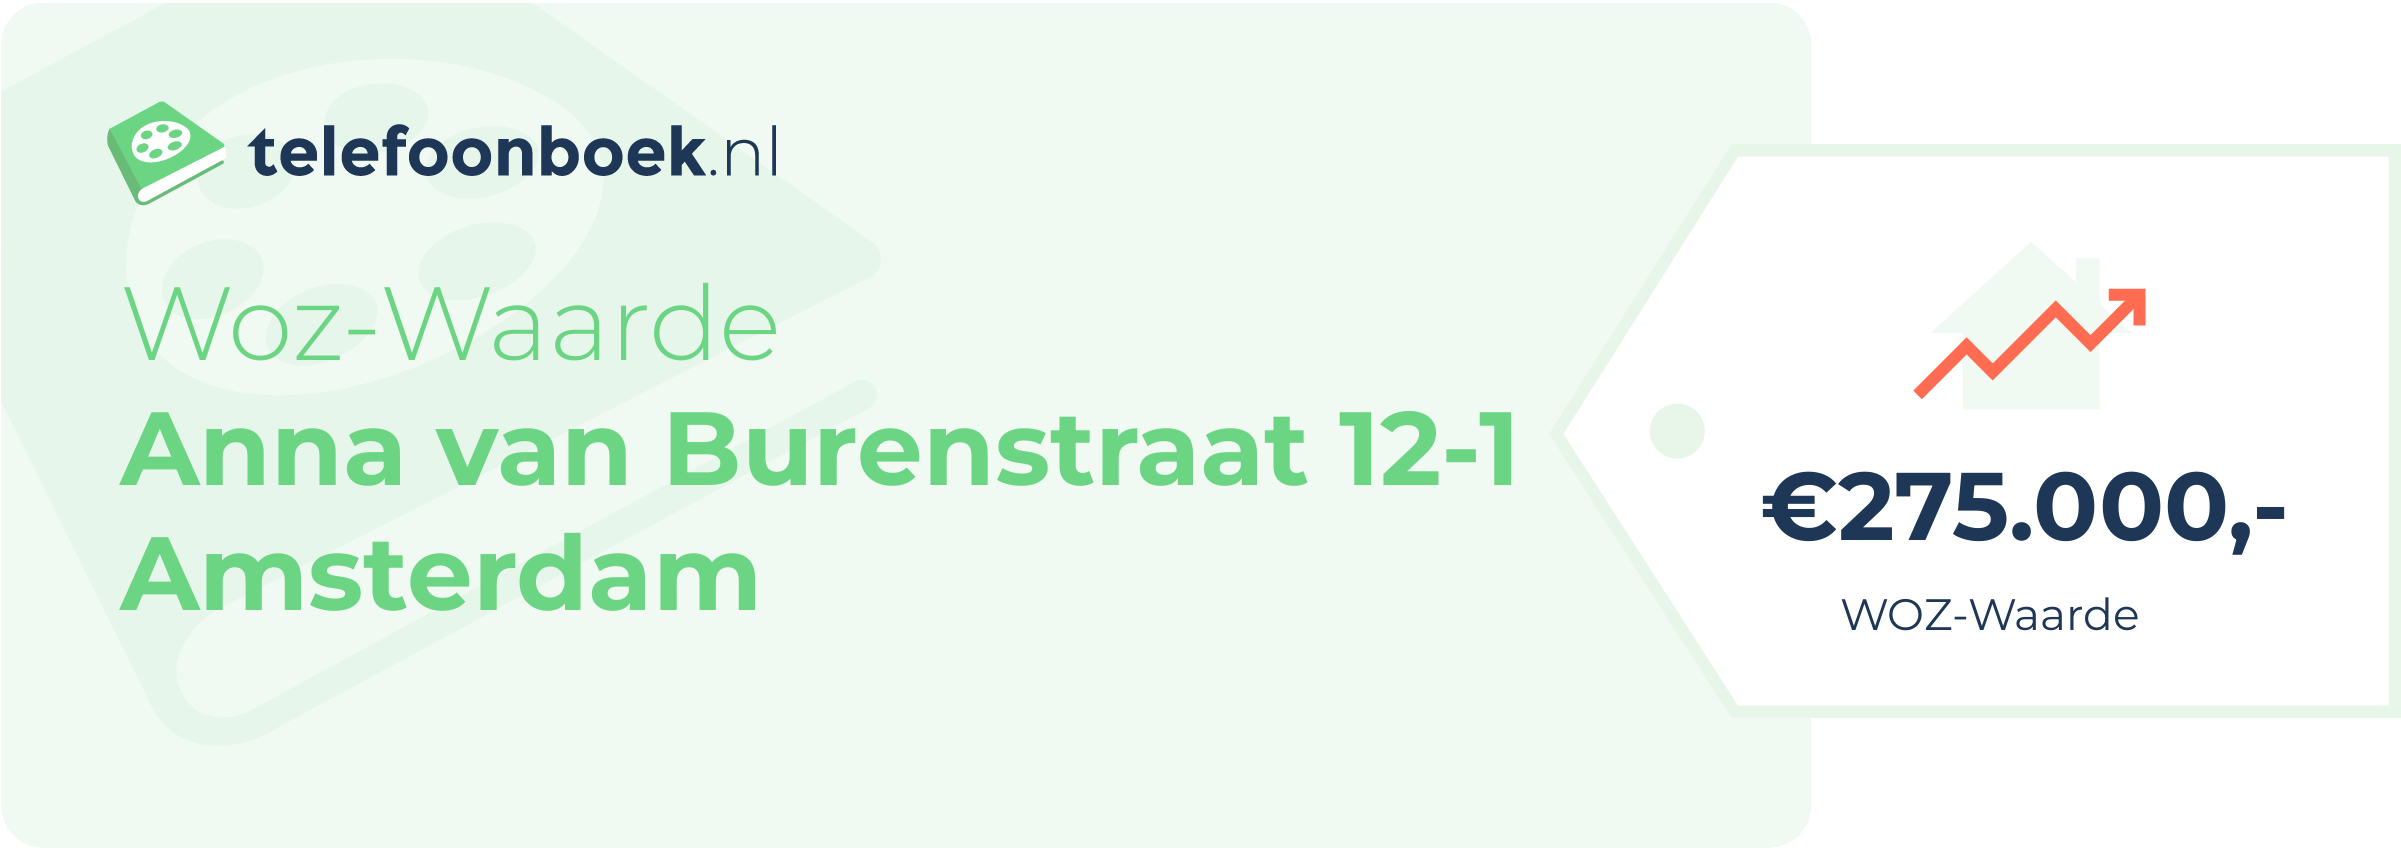 WOZ-waarde Anna Van Burenstraat 12-1 Amsterdam